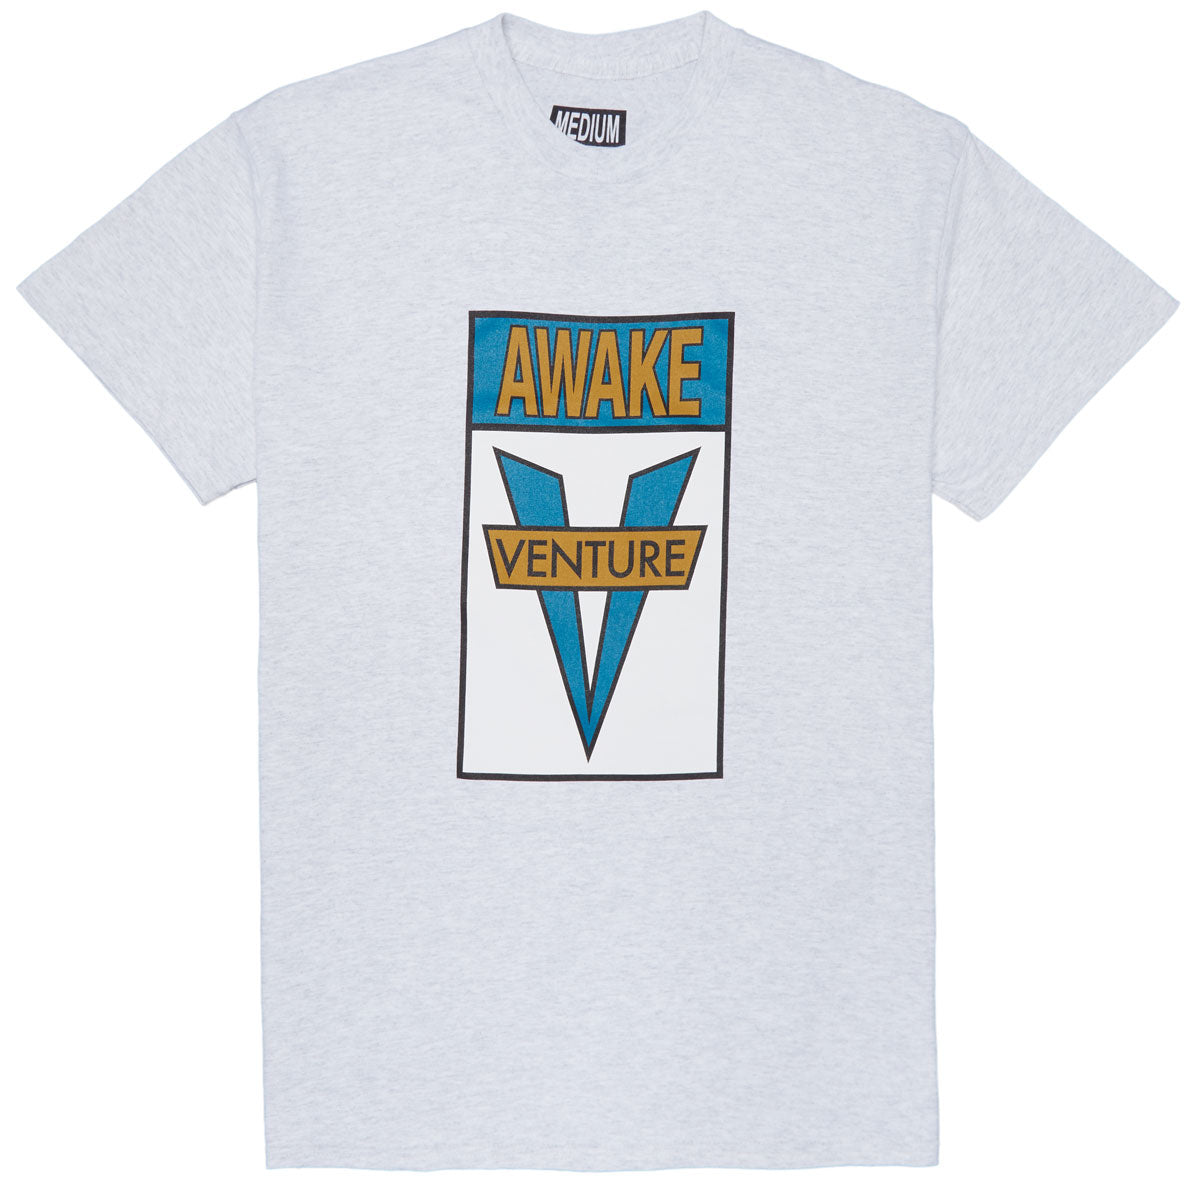 Venture Awake T-Shirt - Ash/Gold/Teal image 1